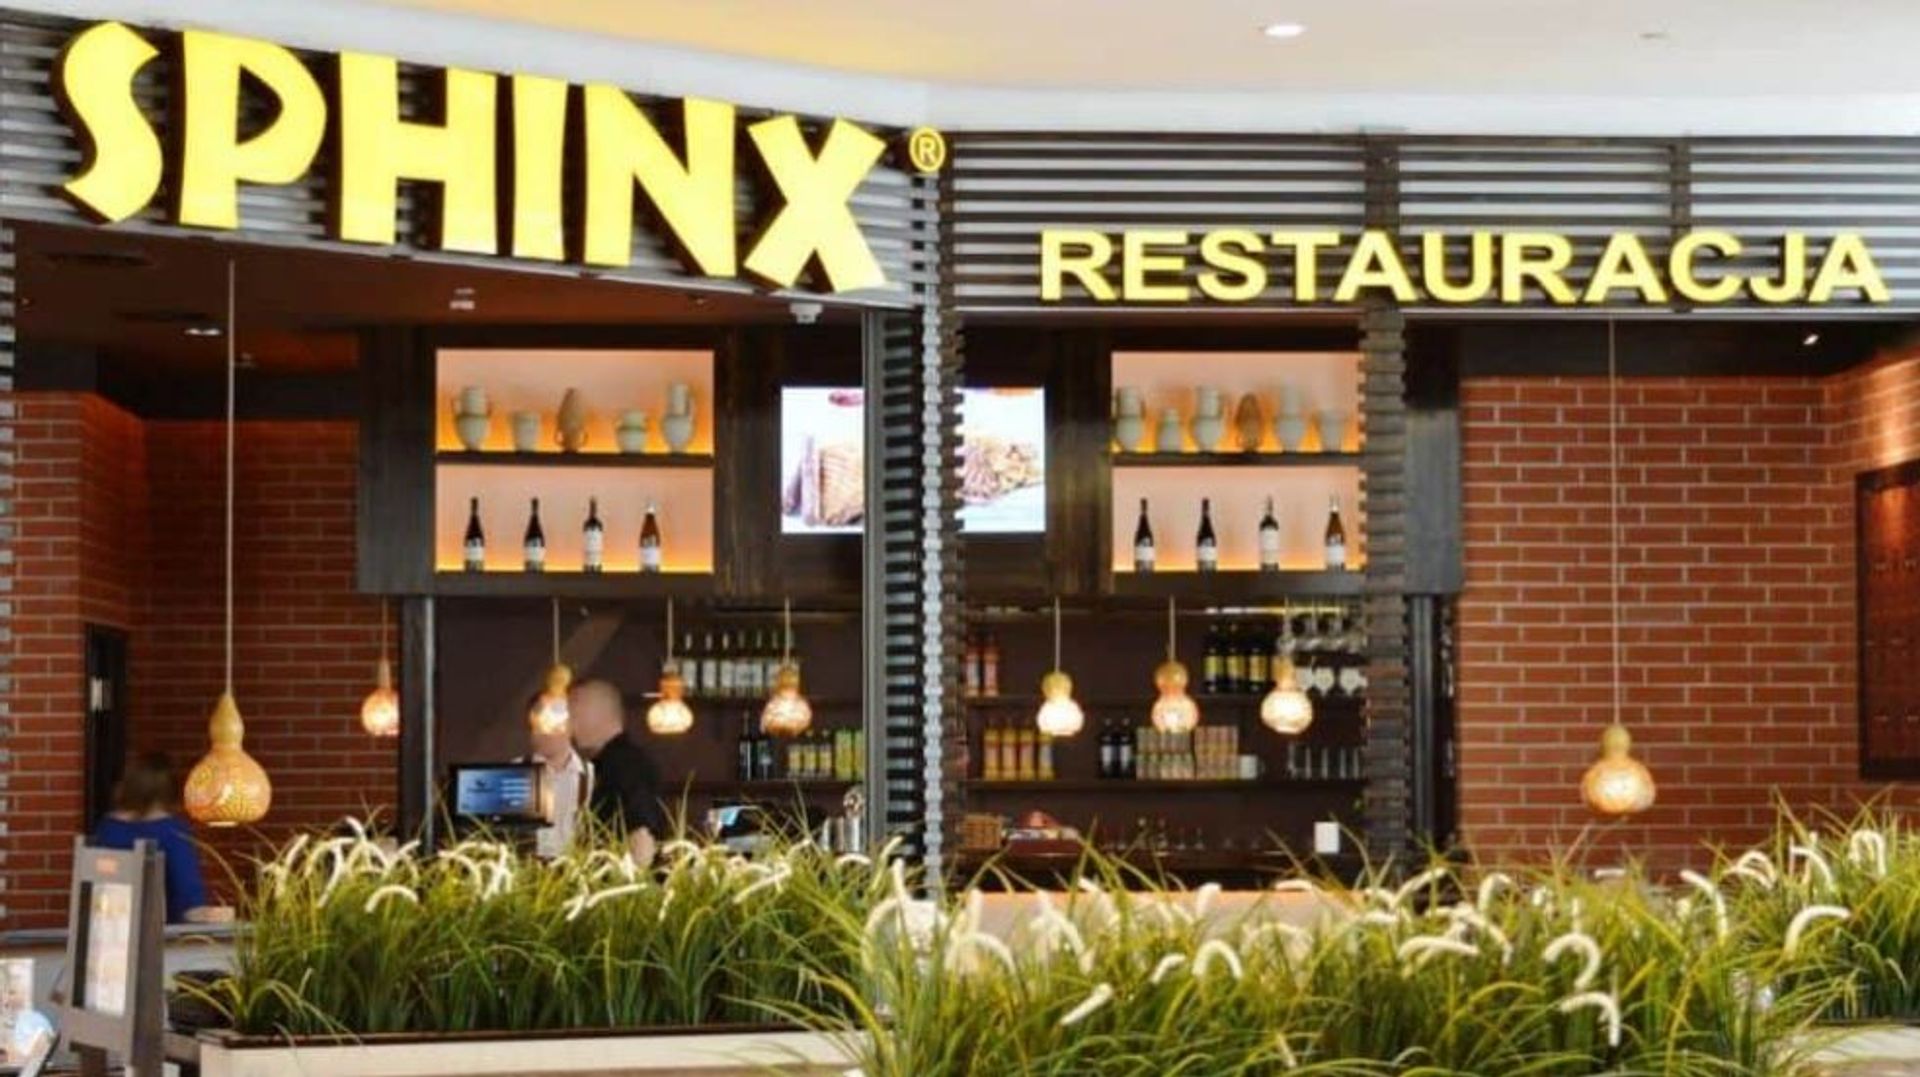 Po ponad rocznej przerwie SPHINX ponownie otwiera czwartą restaurację we Wrocławiu